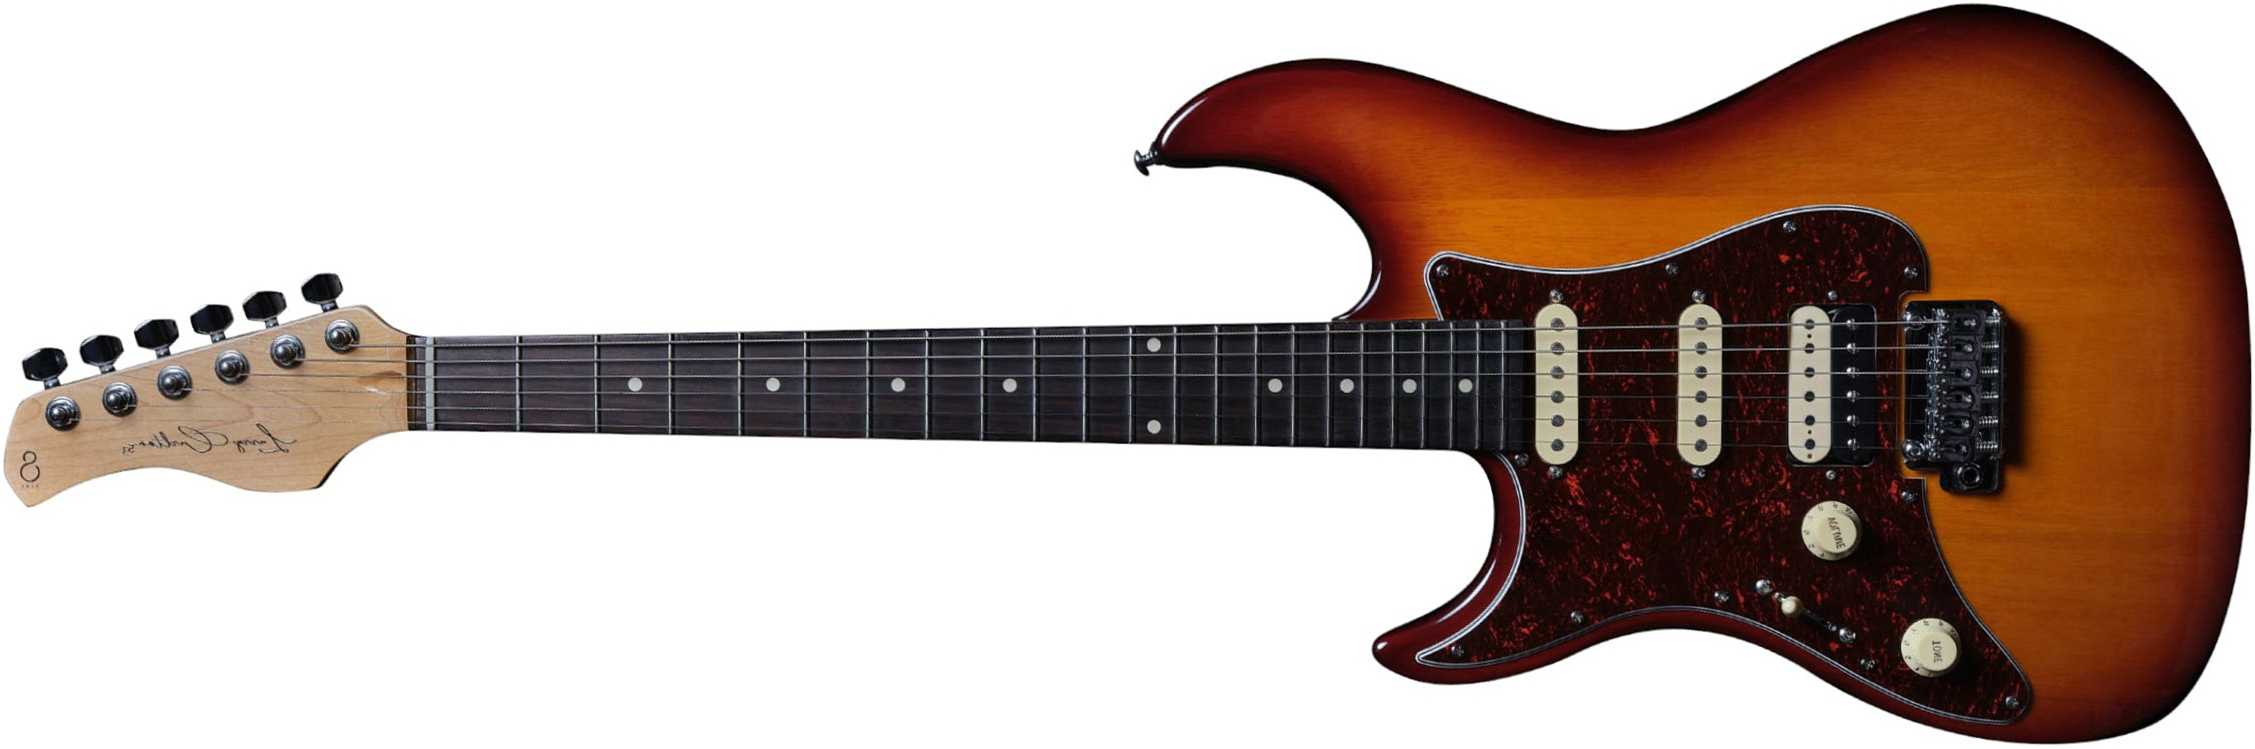 Sire Larry Carlton S3 Lh Signature Gaucher Hss Trem Rw - Tobacco Sunburst - E-Gitarre für Linkshänder - Main picture